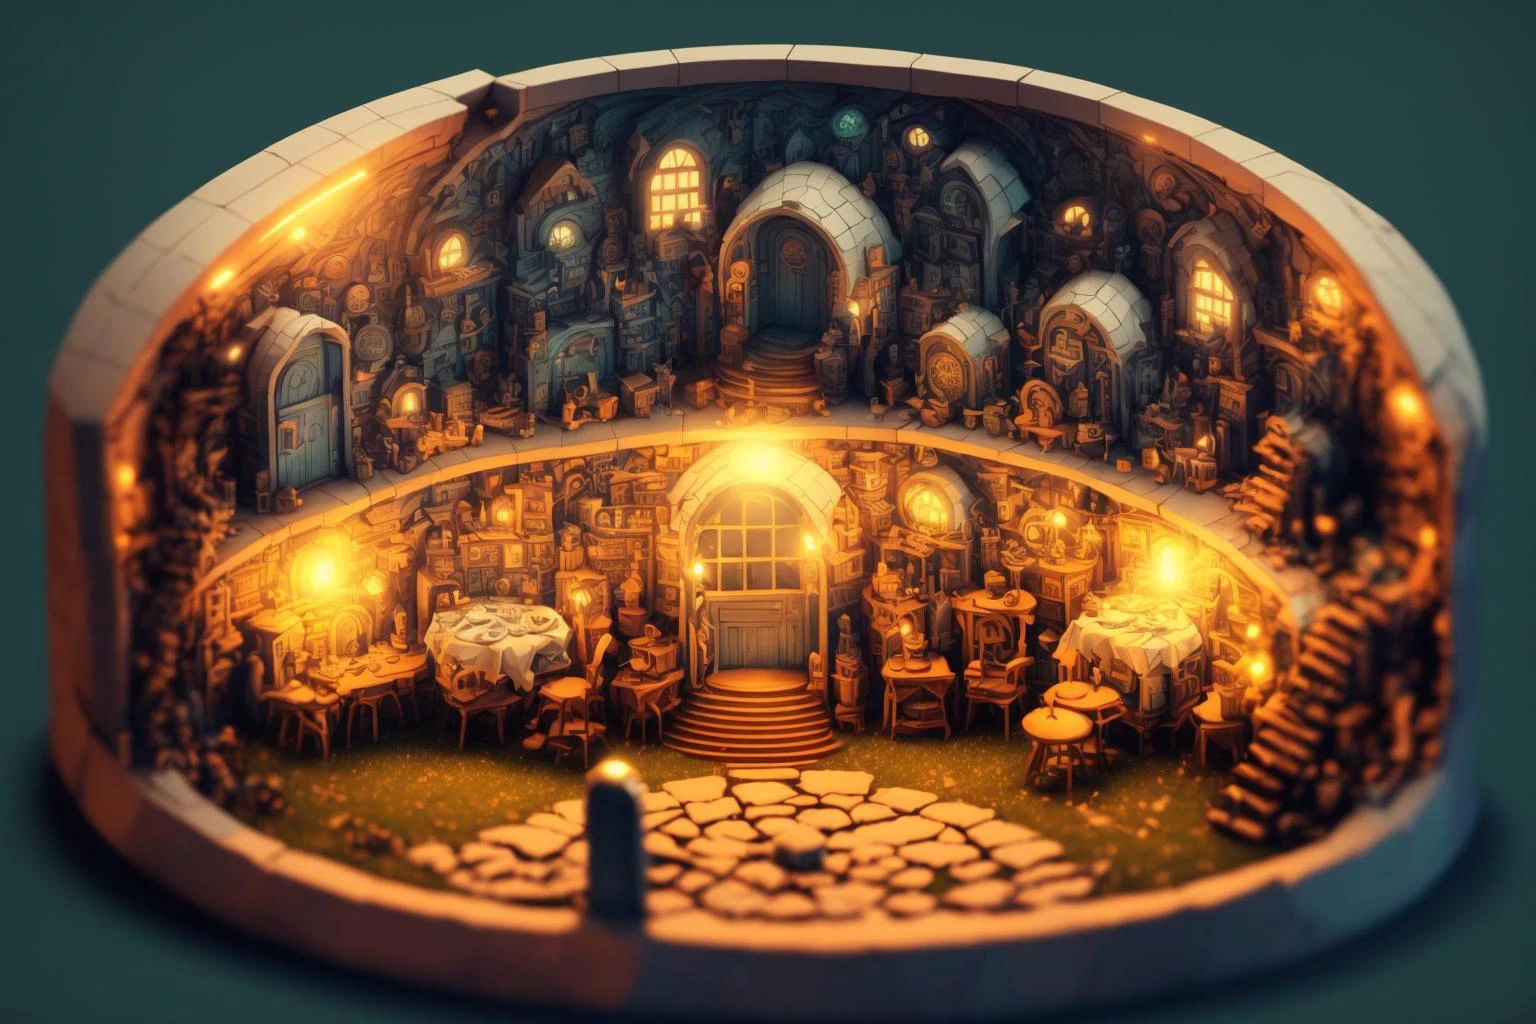 dushametrik casa hobbit el señor de los anillos fondo increíblemente detallado bokeh borde iluminación dushametrik